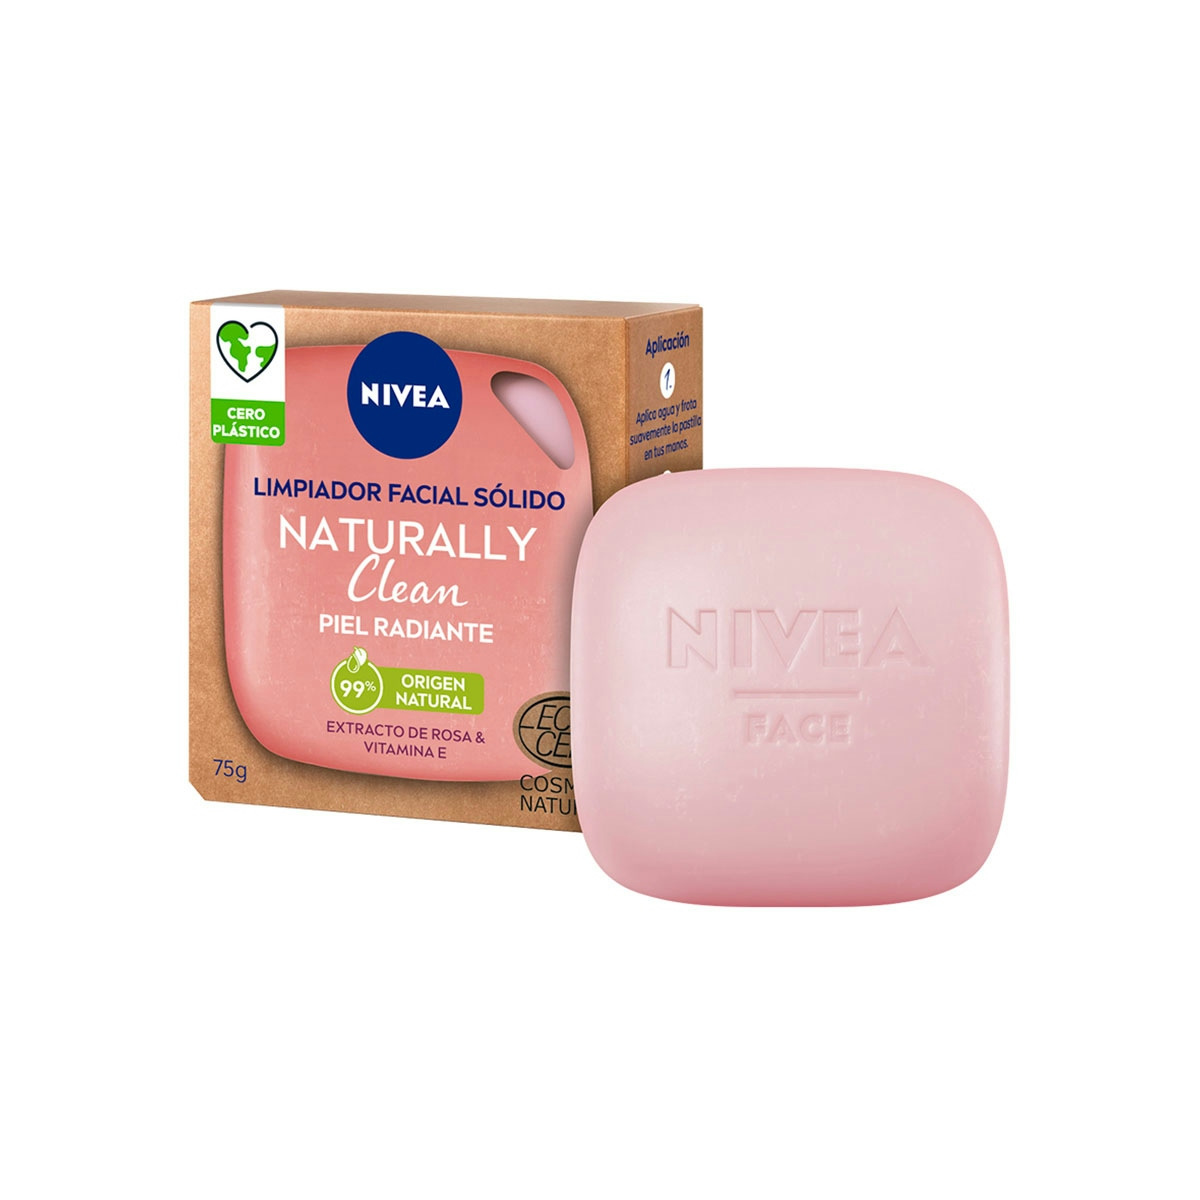 Jabón facial NIVEA piel radiante 1 ud